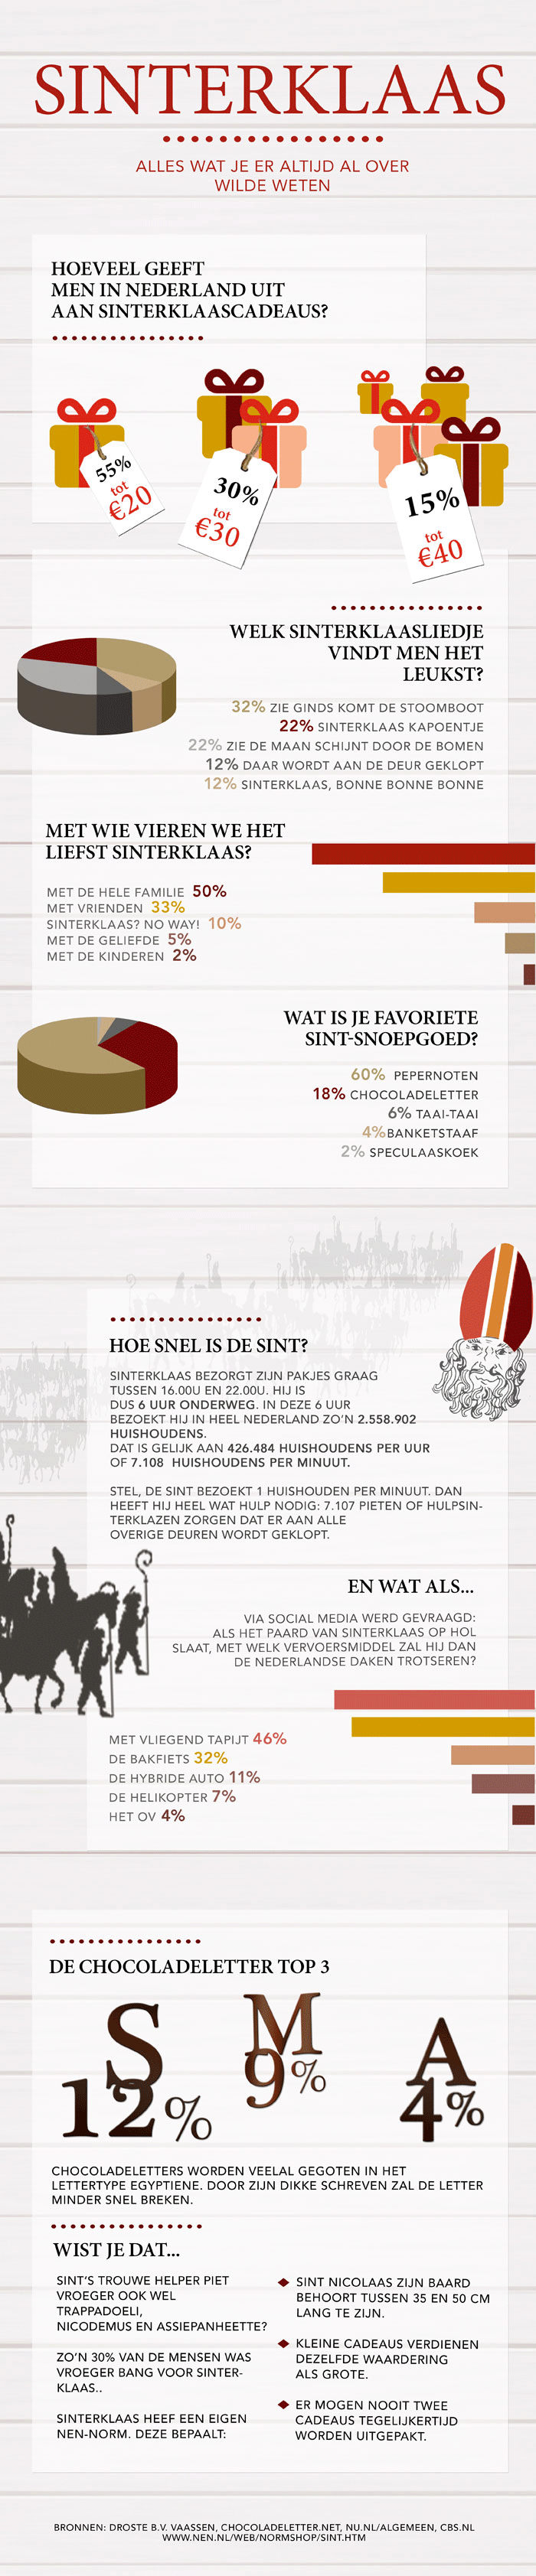 Infographic Sinterklaas en zijn cadeautjes 